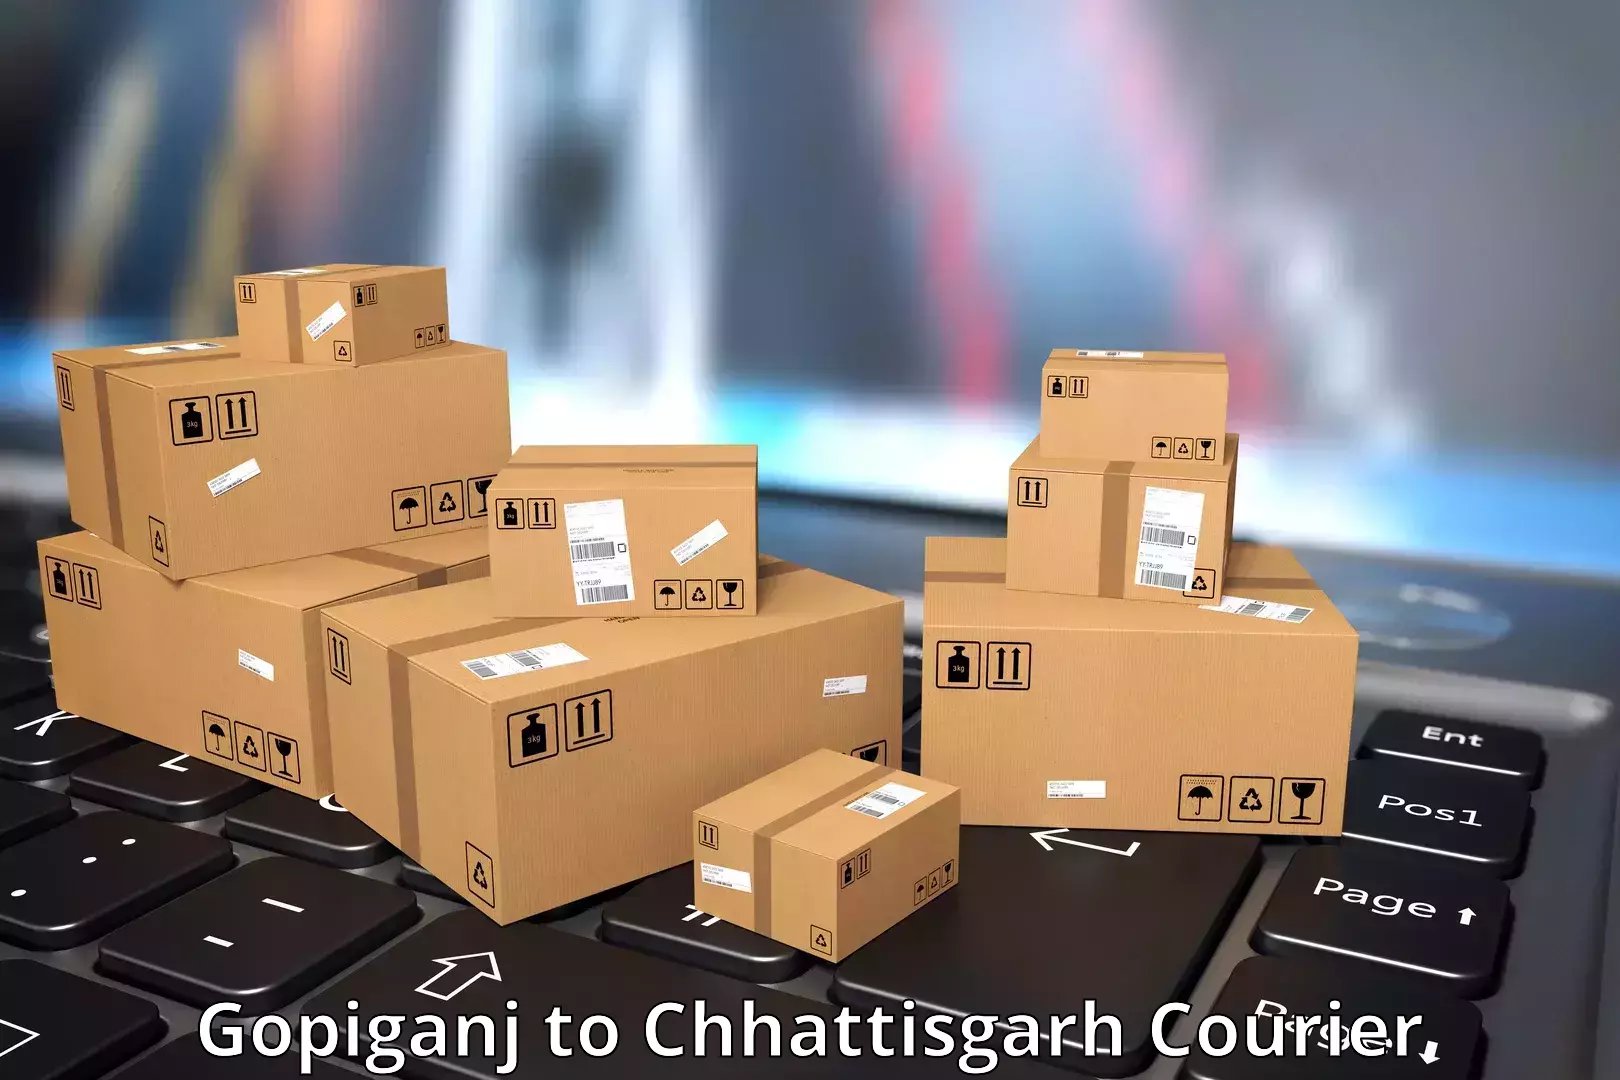 Premium courier solutions Gopiganj to Bijapur Chhattisgarh